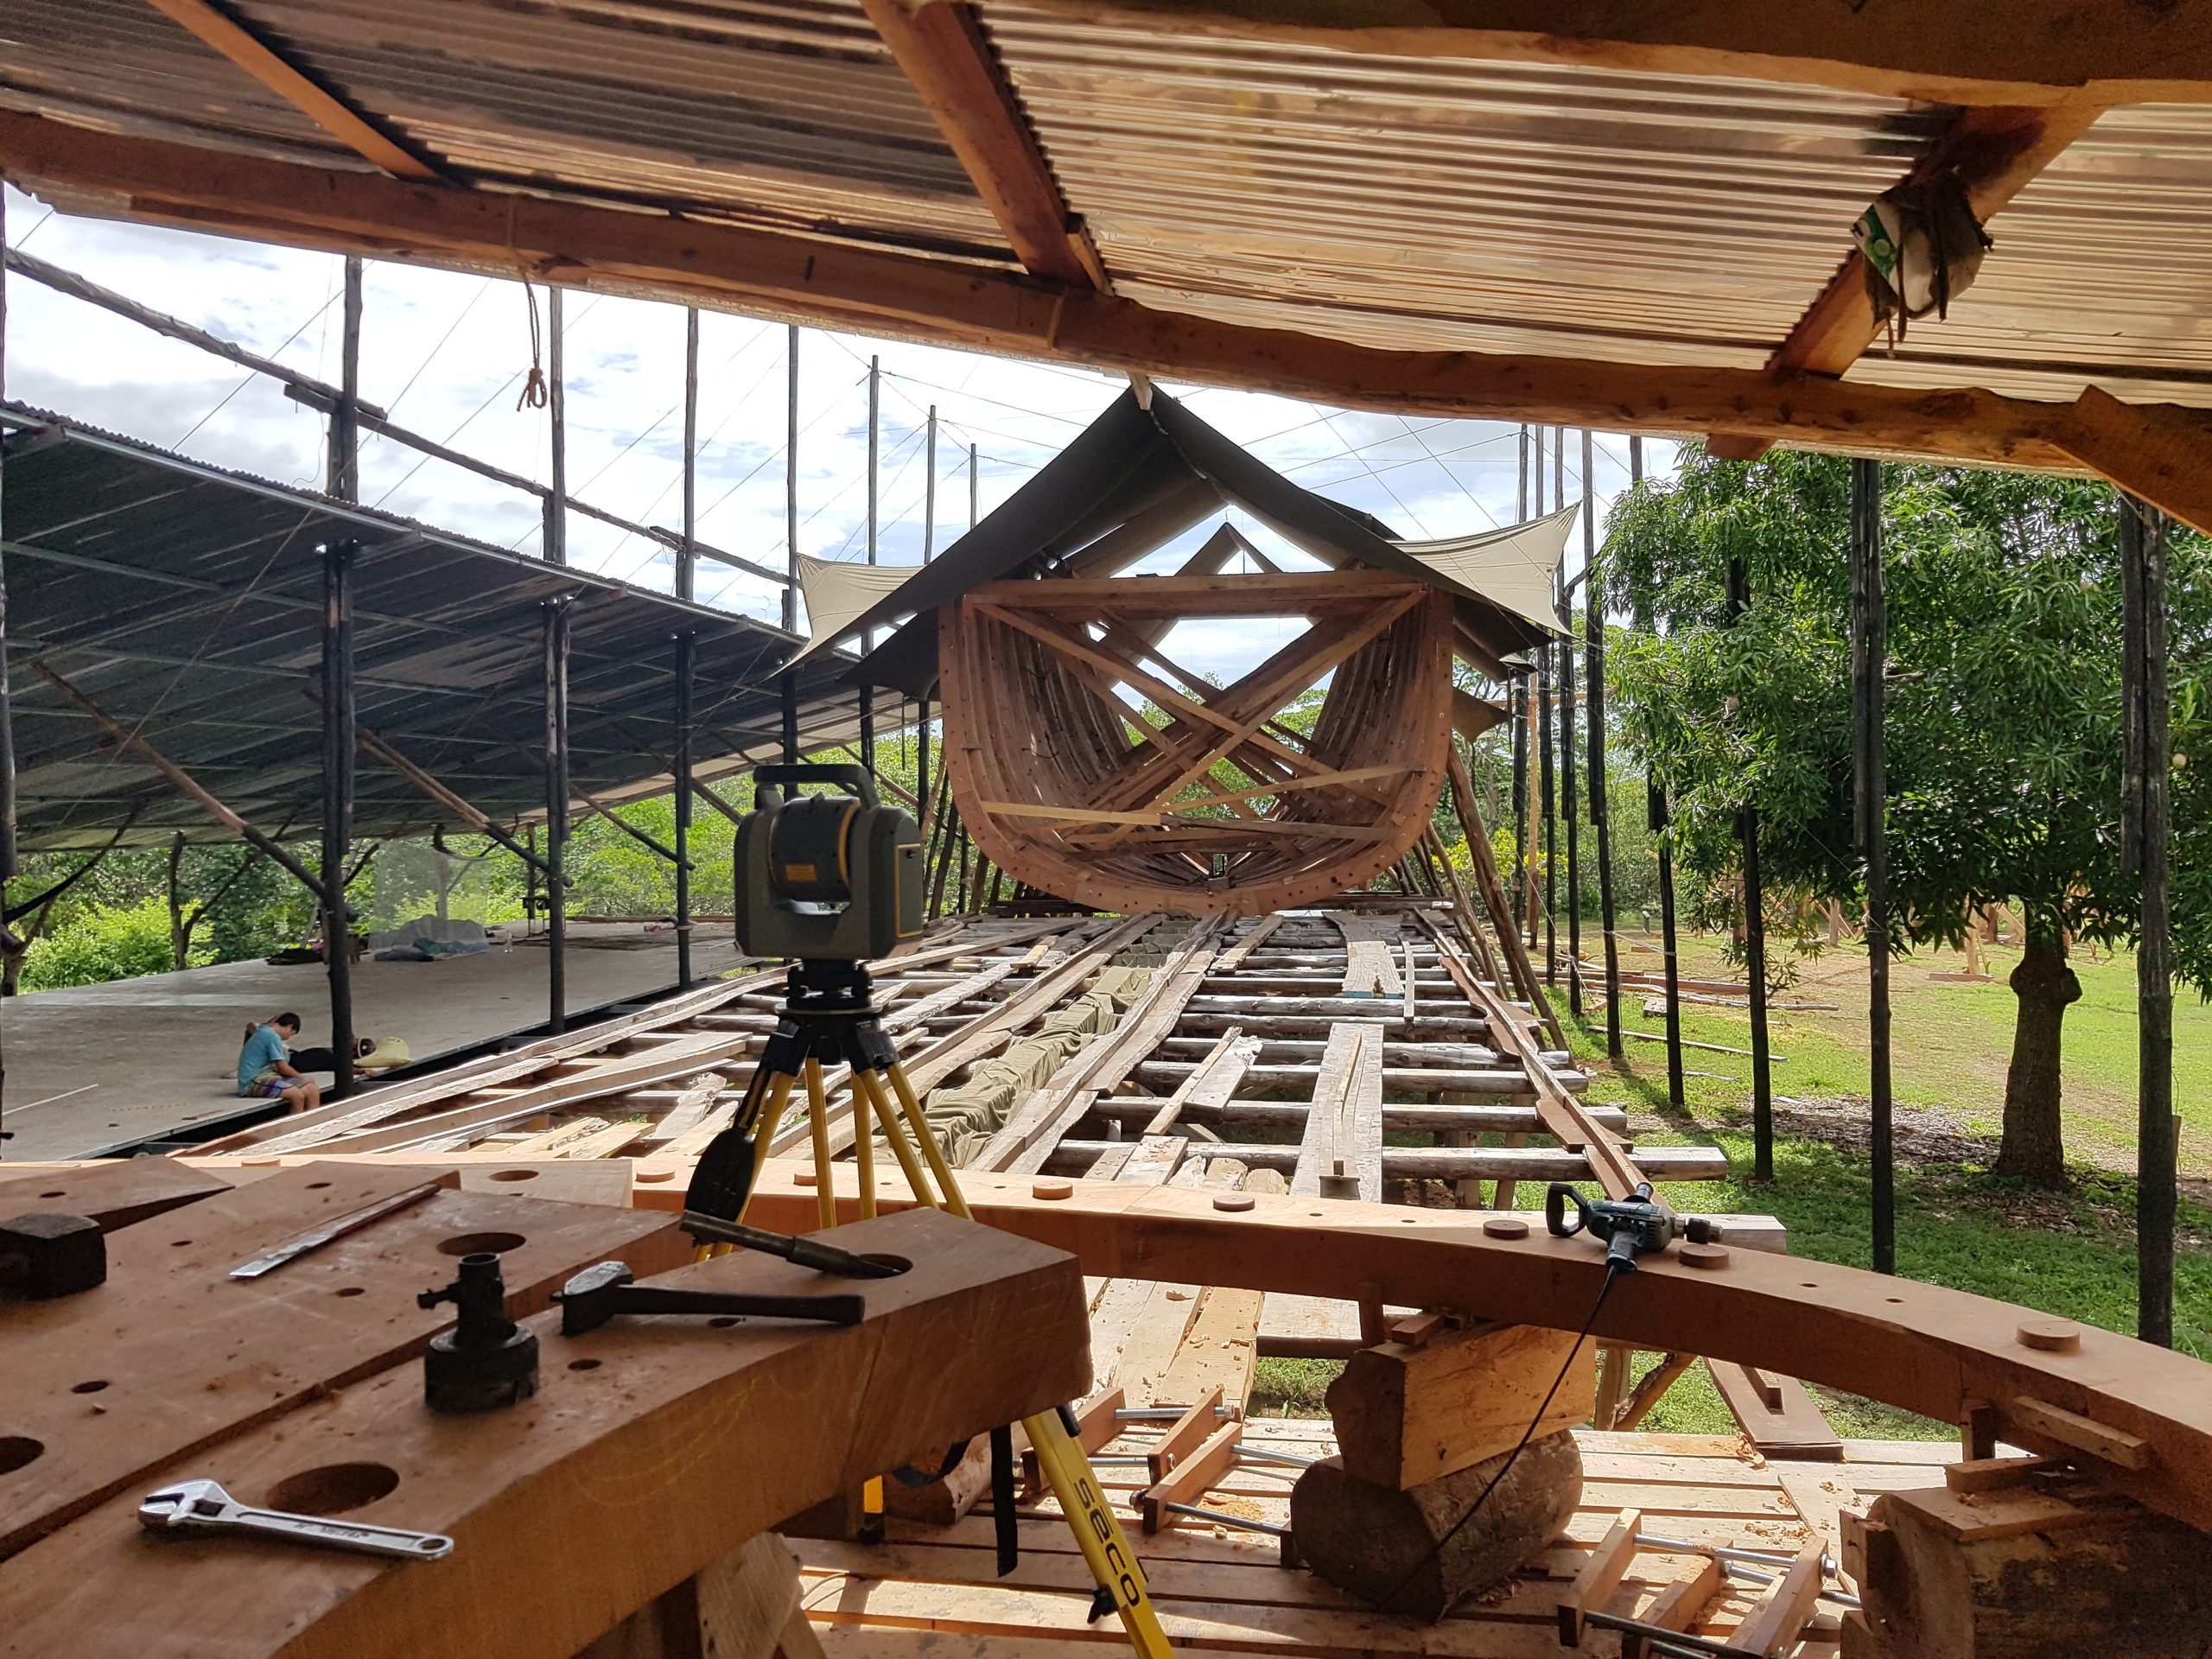 The schooner Ceiba is being built in the Costa Rican jungle.